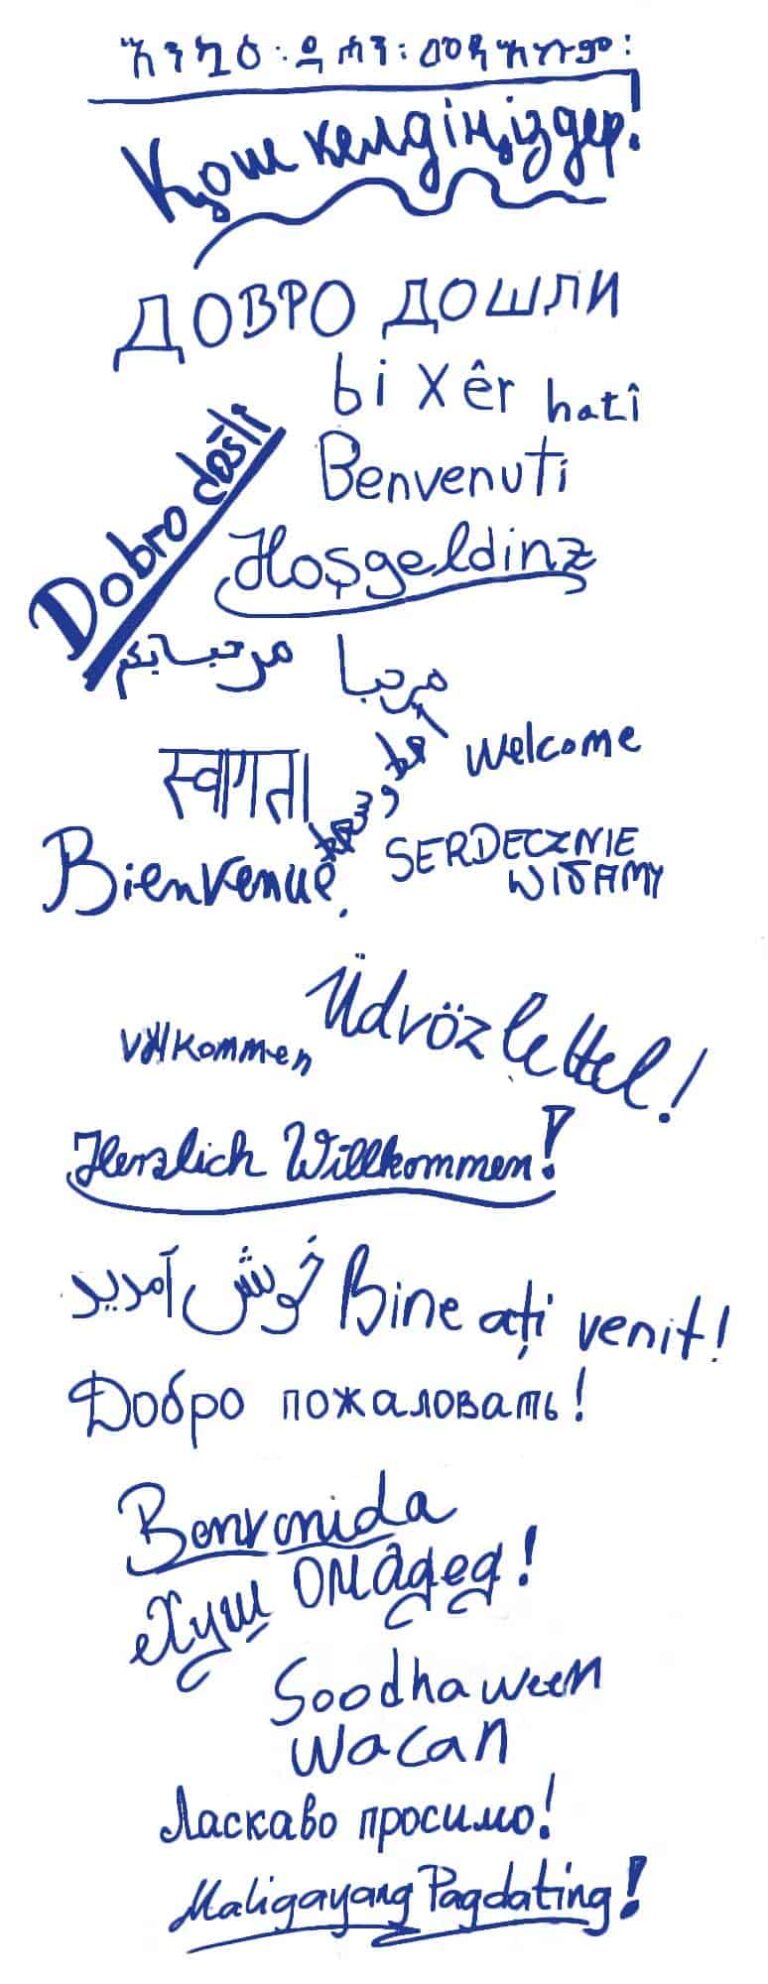 Willkommen - Welcome in verschiedenen Sprachen